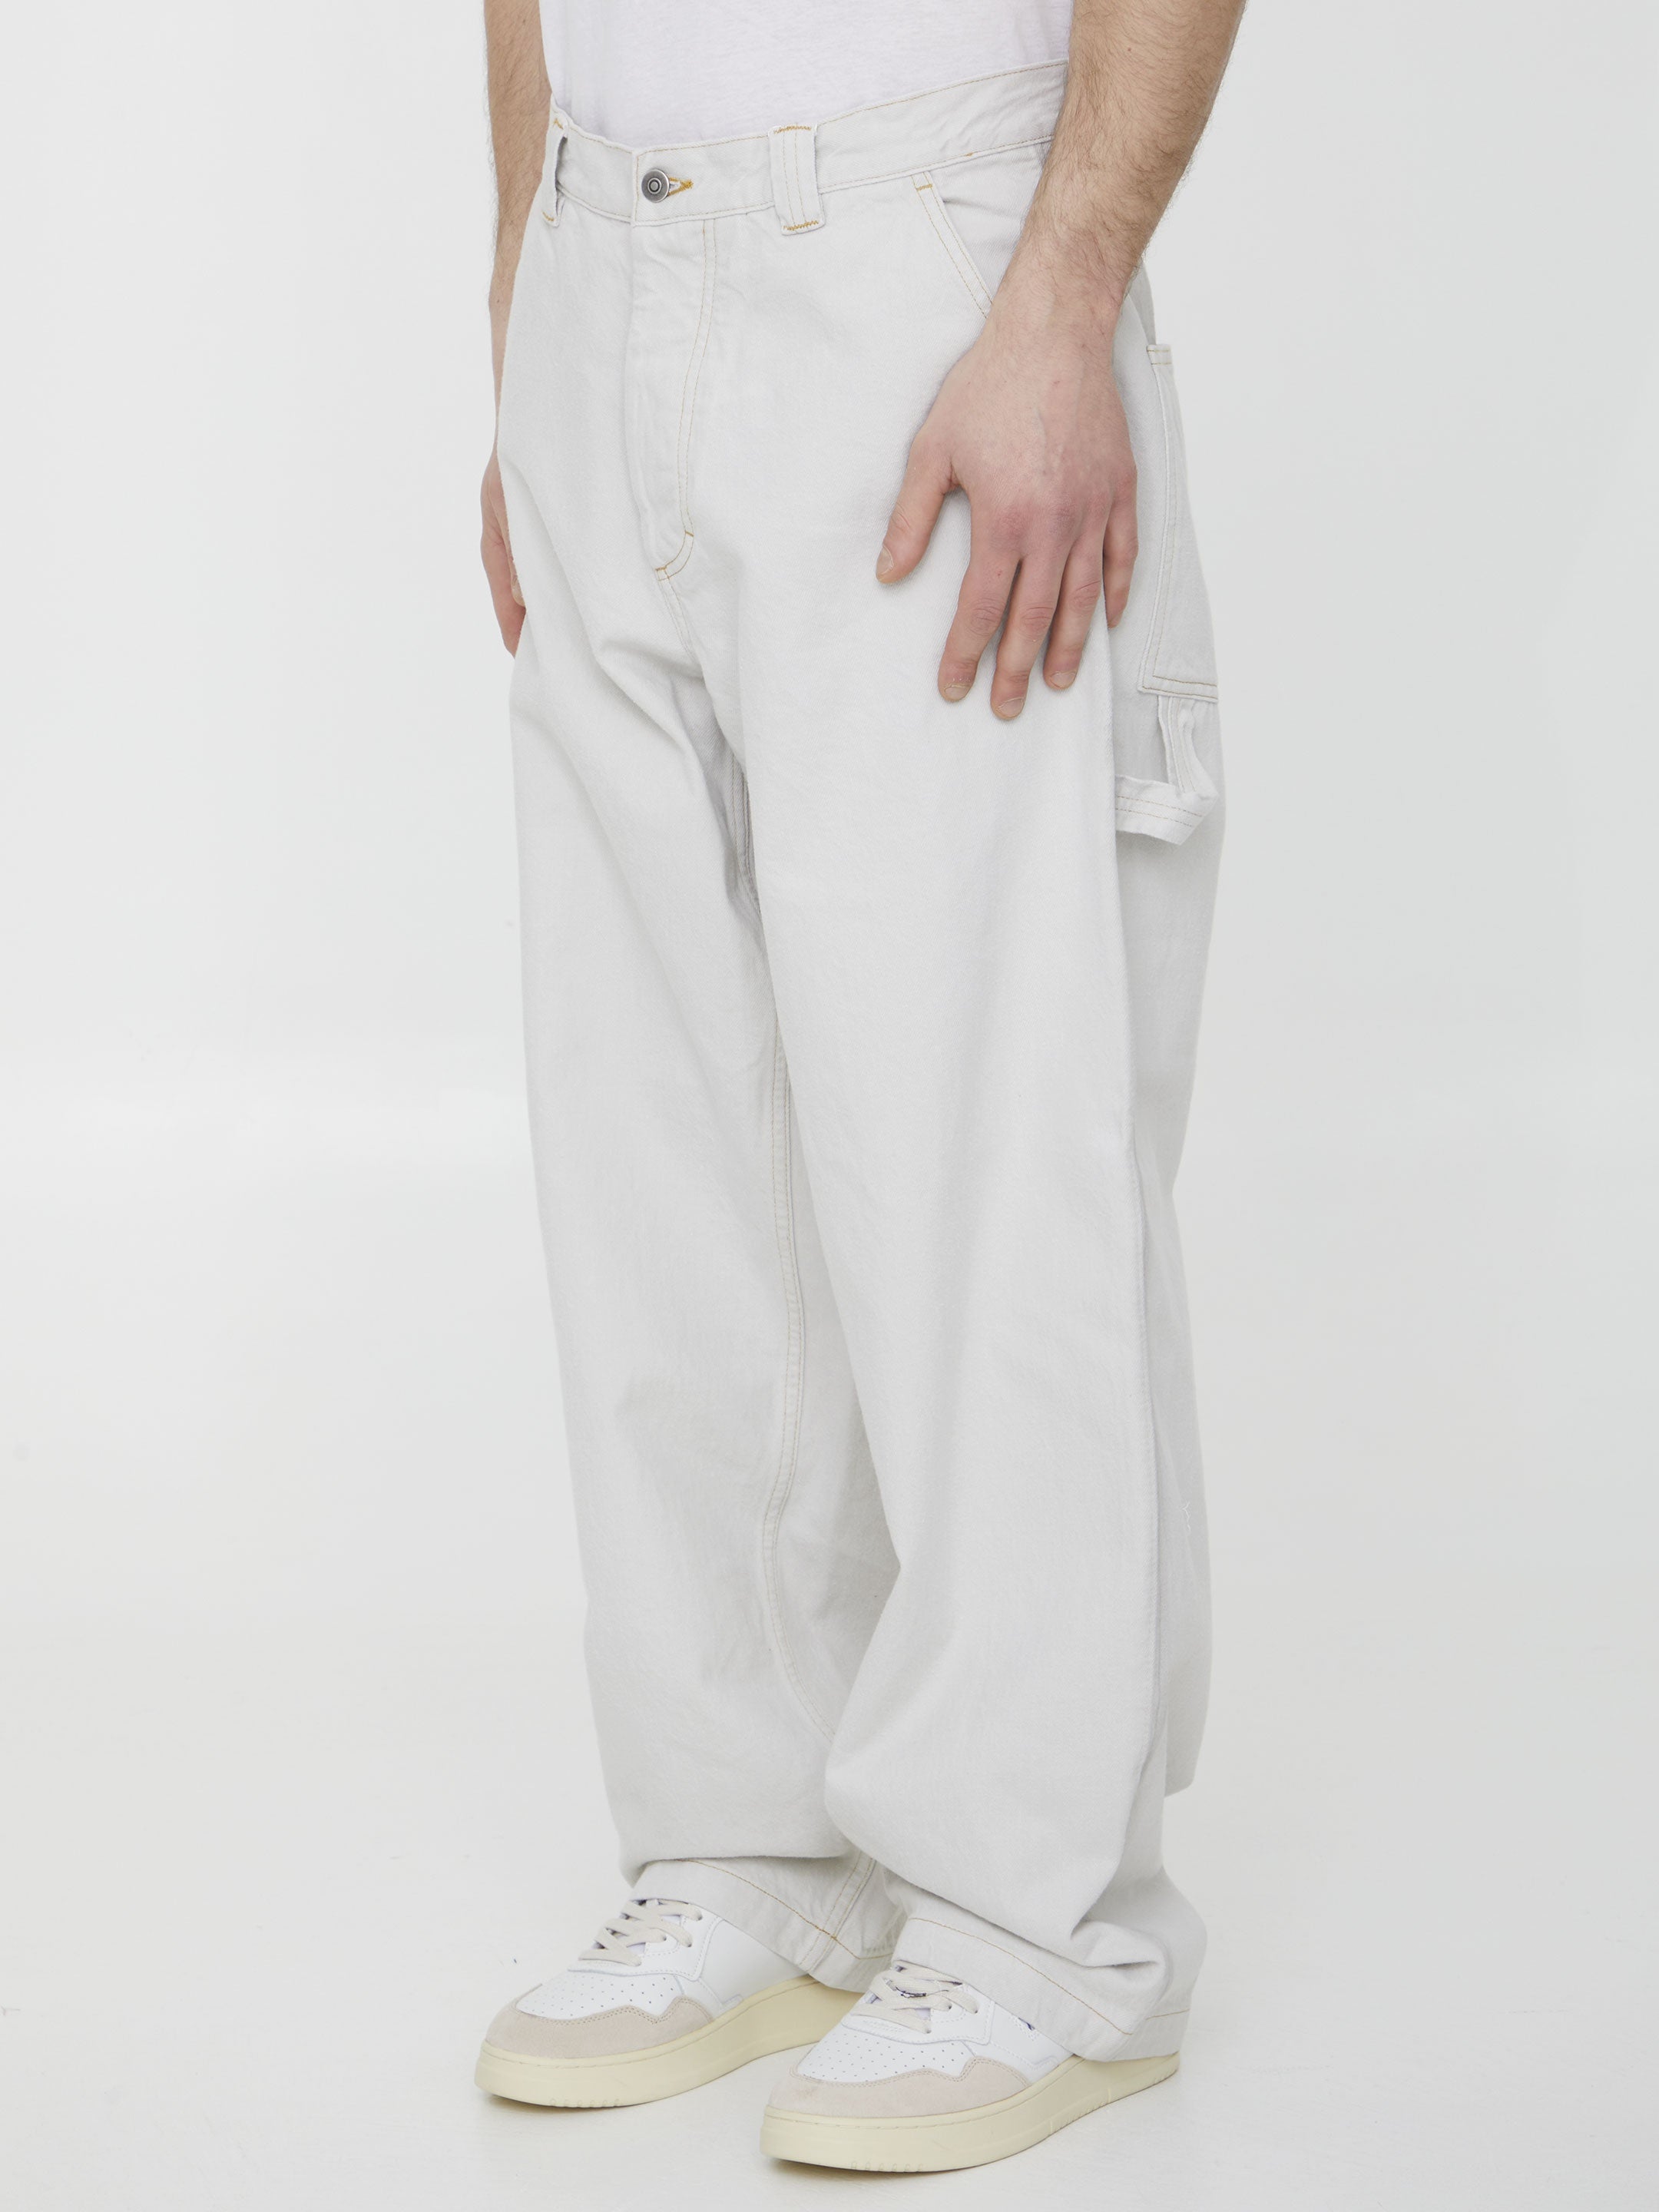 MAISON-MARGIELA-OUTLET-SALE-Cotton-denim-trousers-Hosen-ARCHIVE-COLLECTION-2.jpg